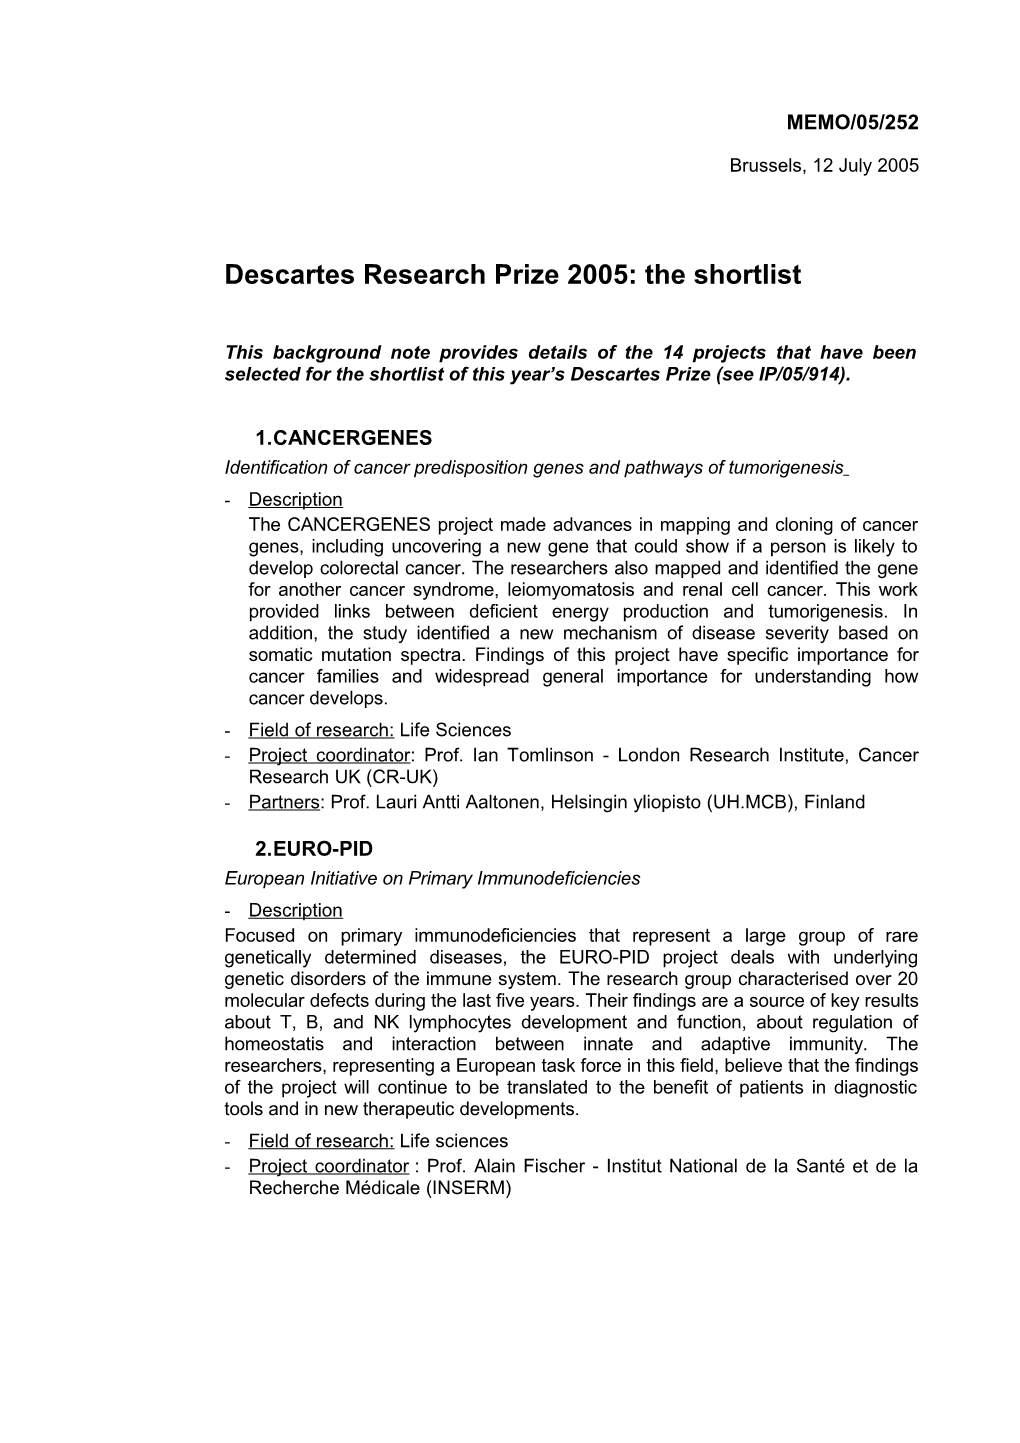 Descartes Research Prize 2005: the Shortlist